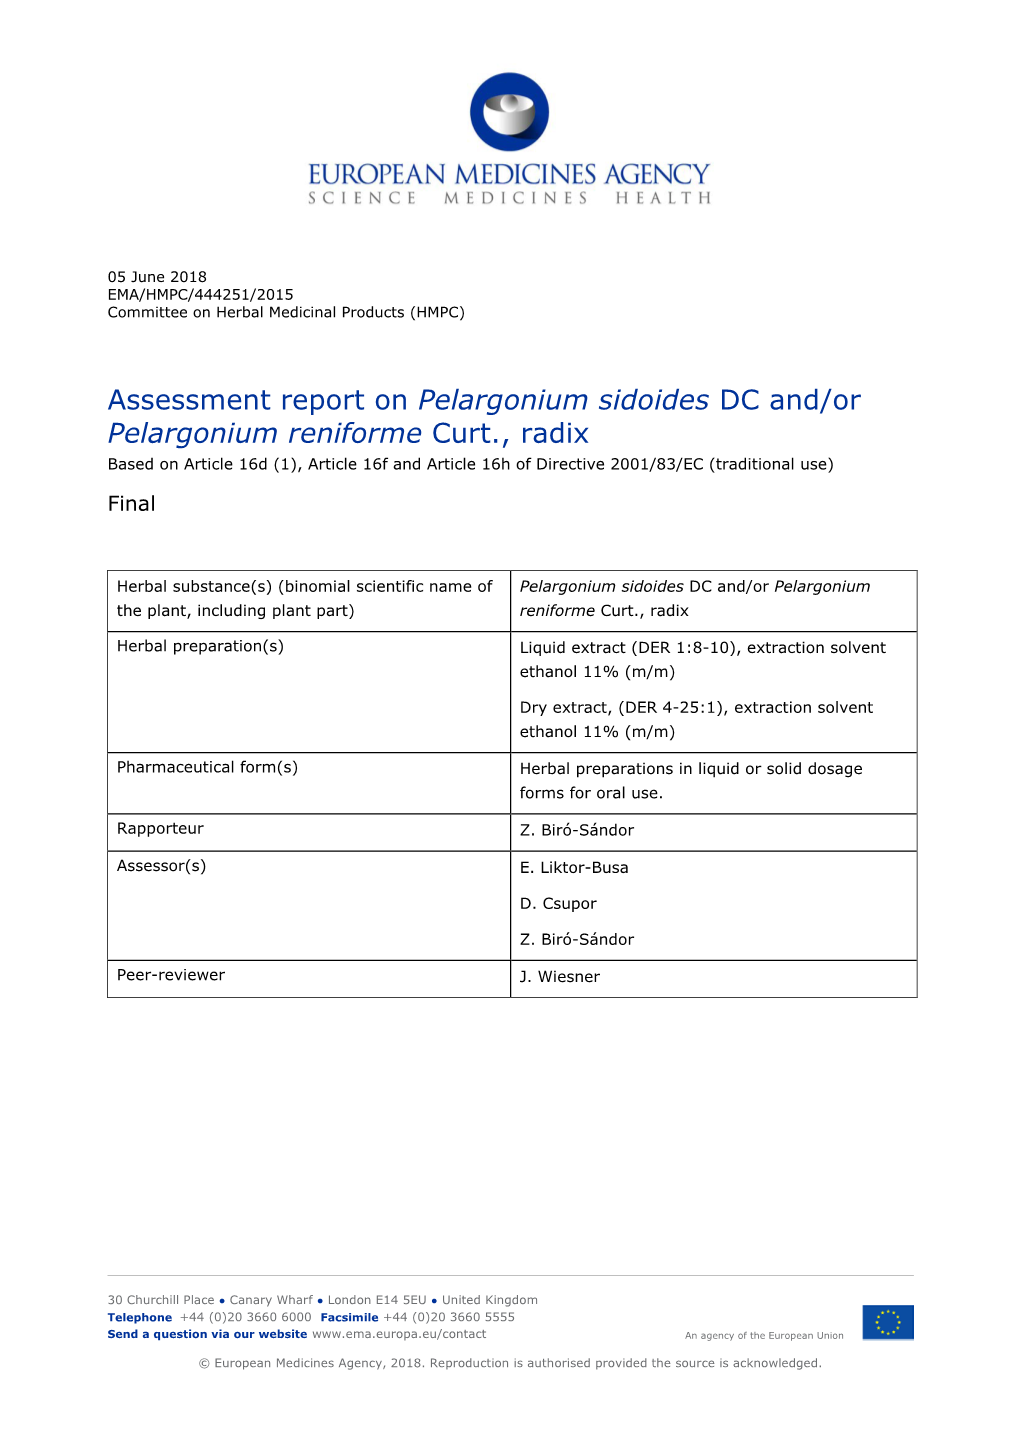 Assessment Report on Pelargonium Sidoides DC And/Or Pelargonium Reniforme Curt., Radix